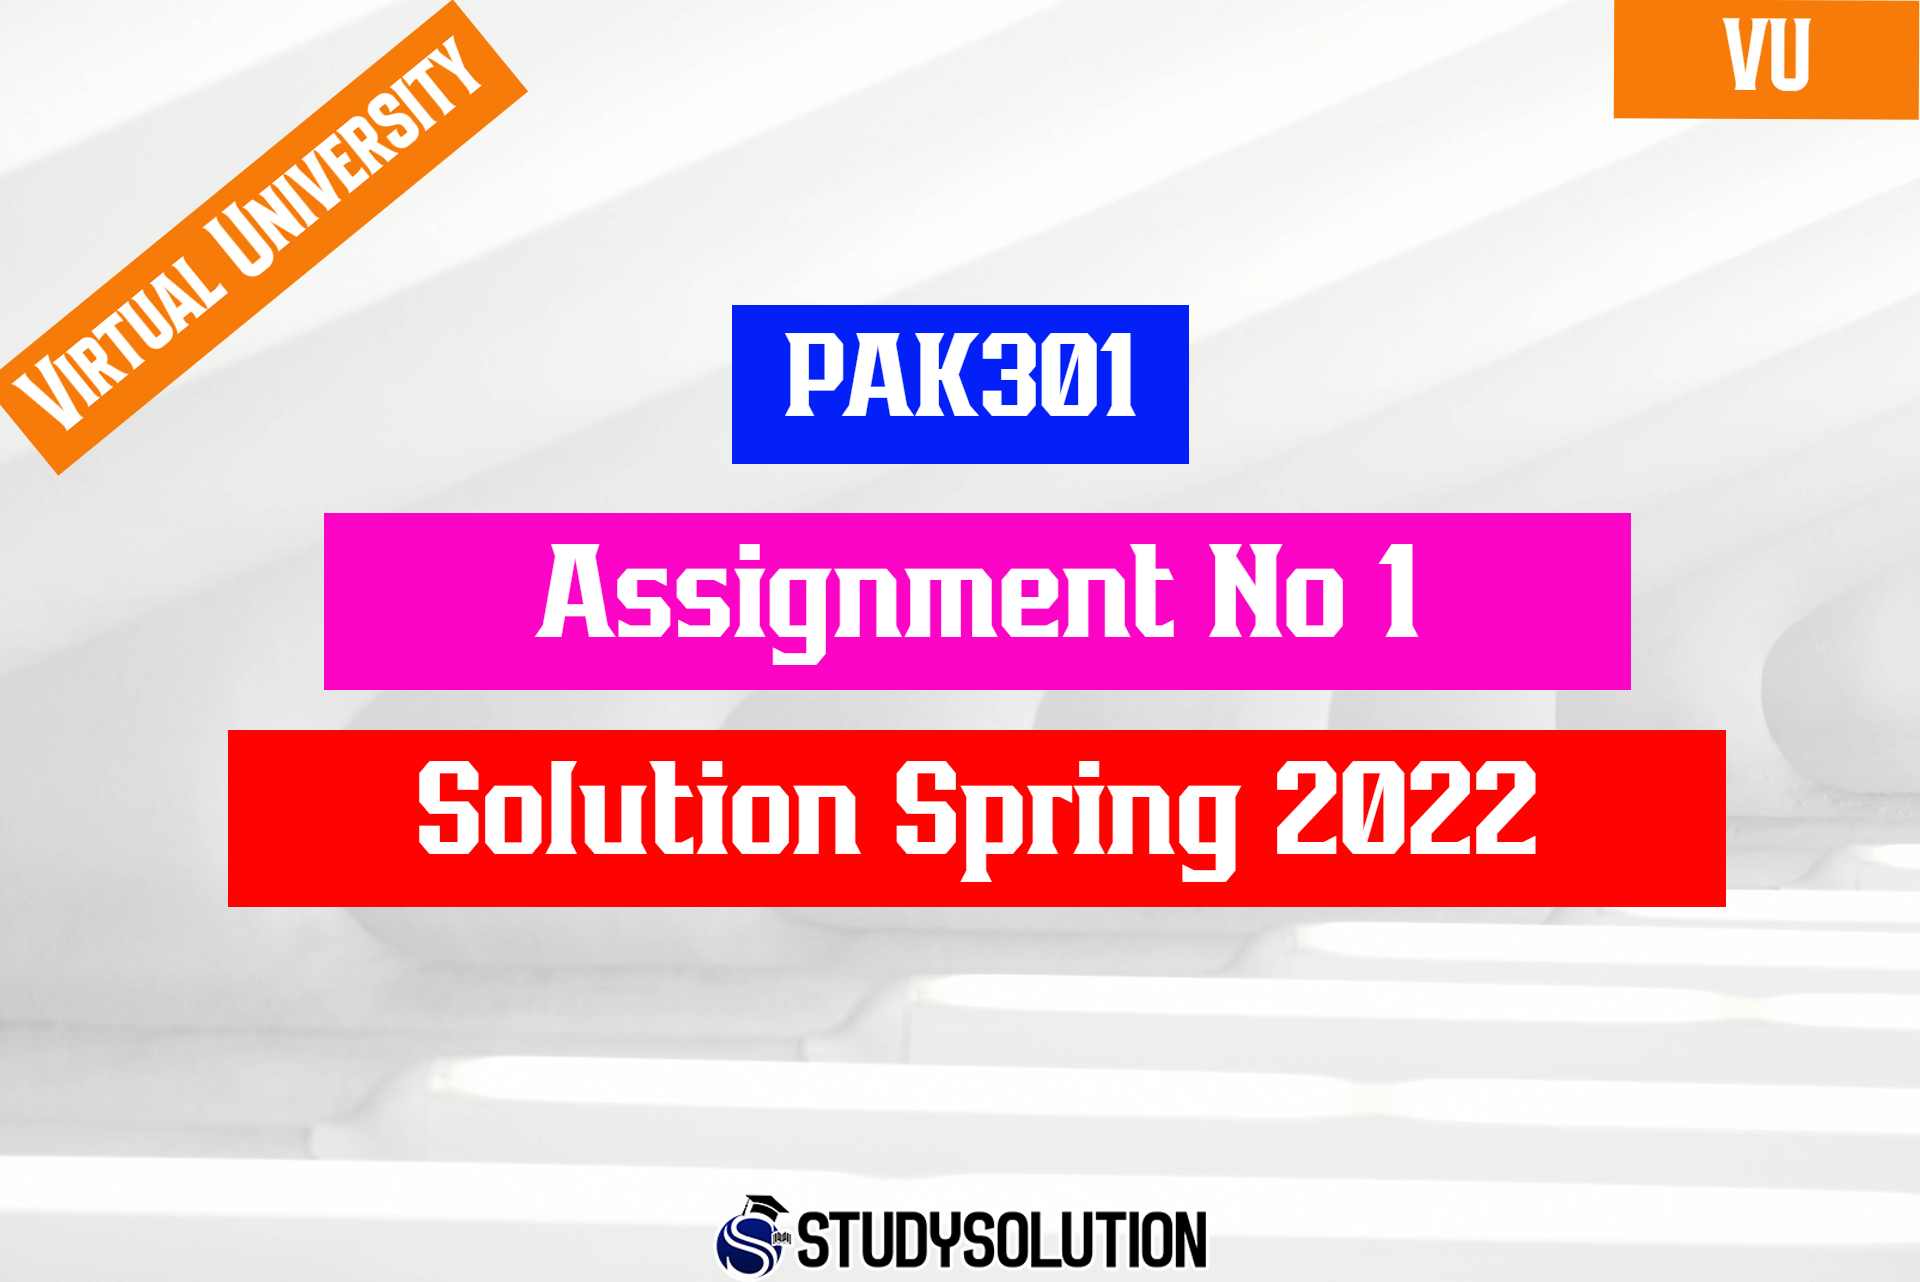 PAK301 Assignment No 1 Solution Spring 2022